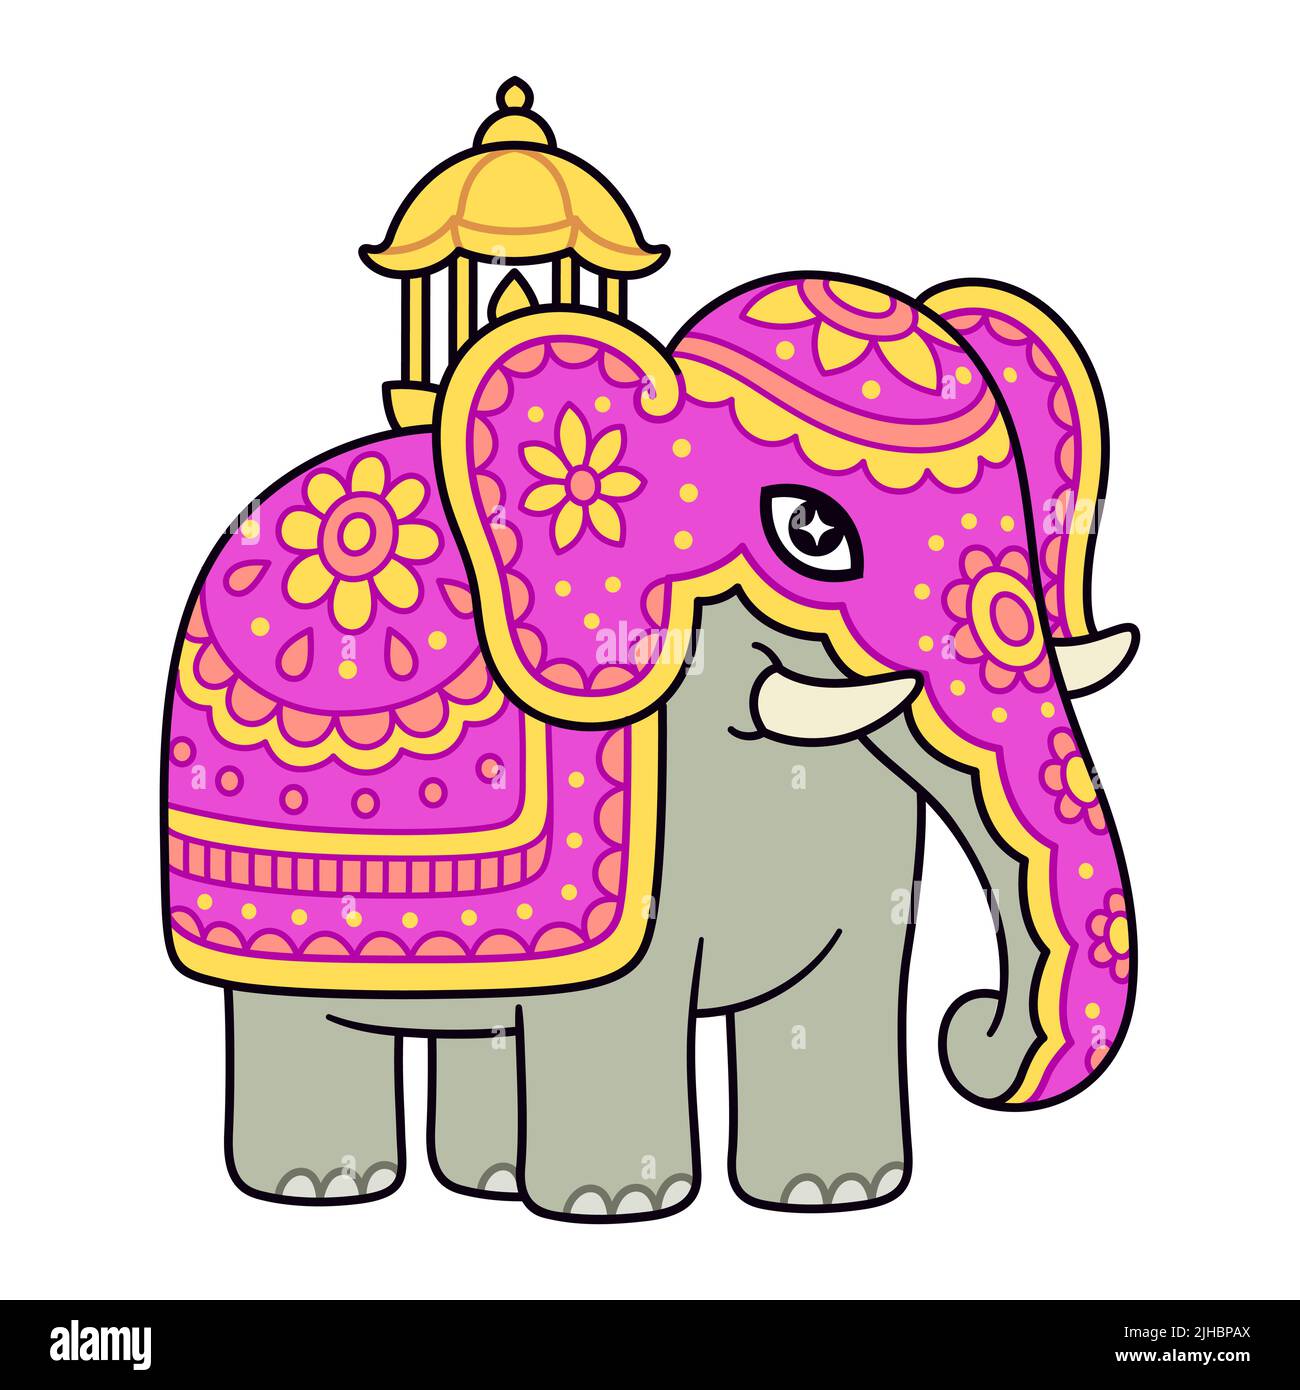 Elefante decorado para la procesión de Kandy Esala Perahera, Festival del Diente en Sri Lanka. Lindo dibujo de dibujos animados, ilustración vectorial de imágenes prediseñadas. Ilustración del Vector